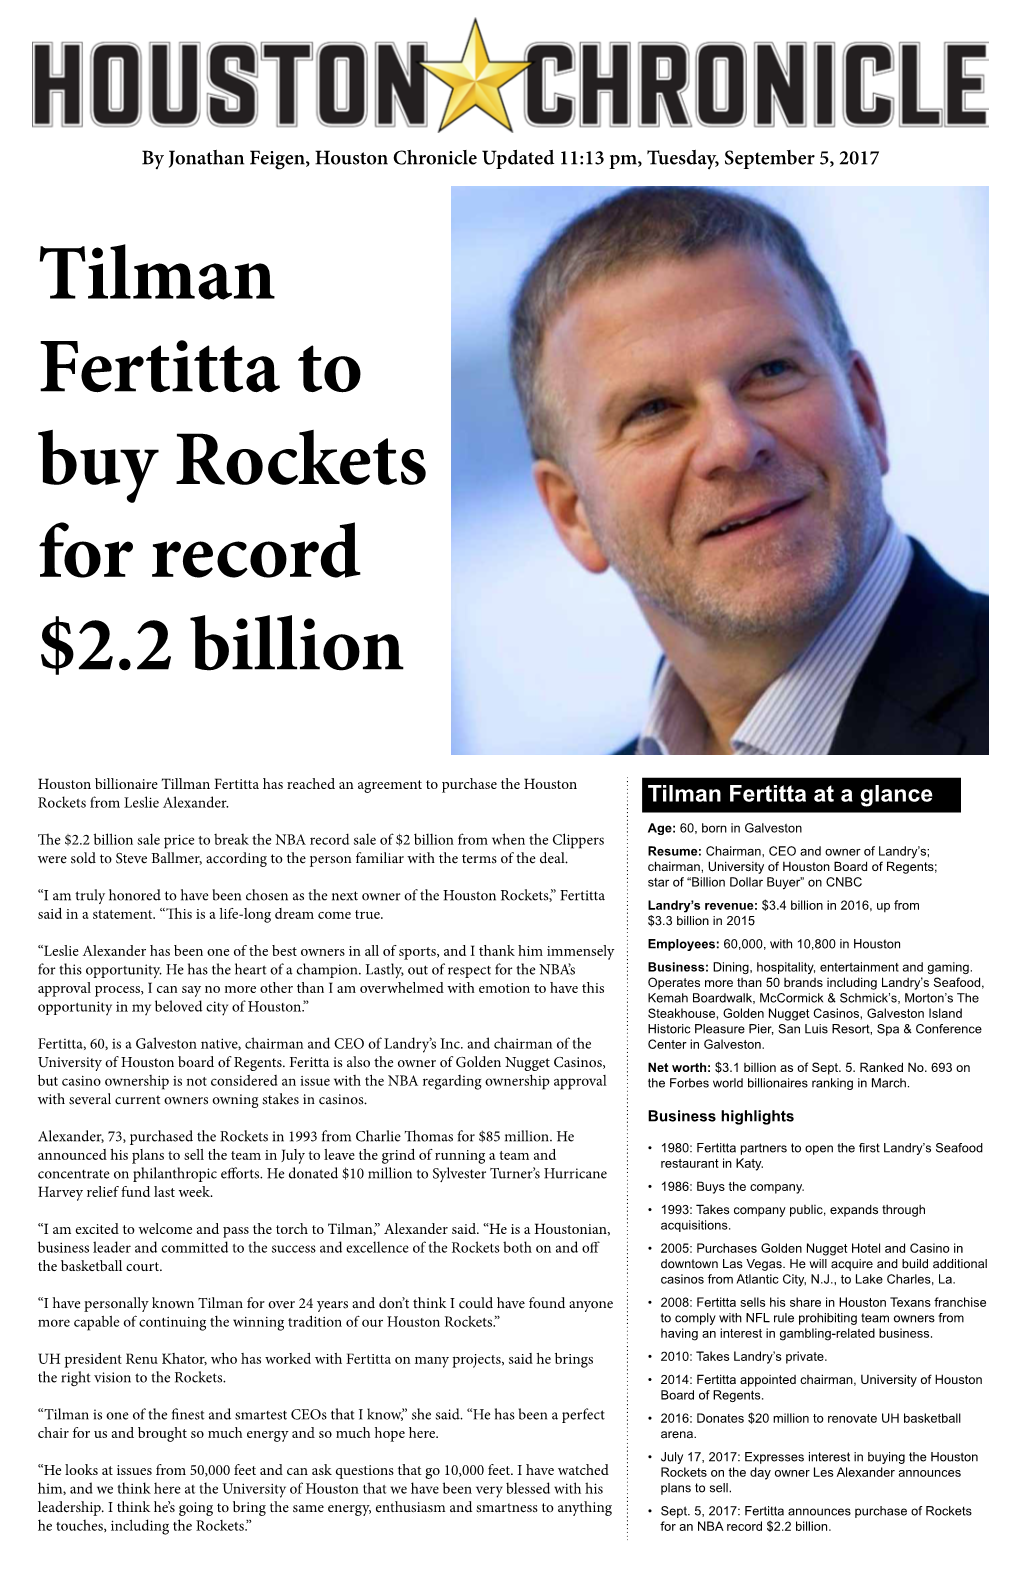 Tilman Fertitta to Buy Rockets for Record $2.2 Billion